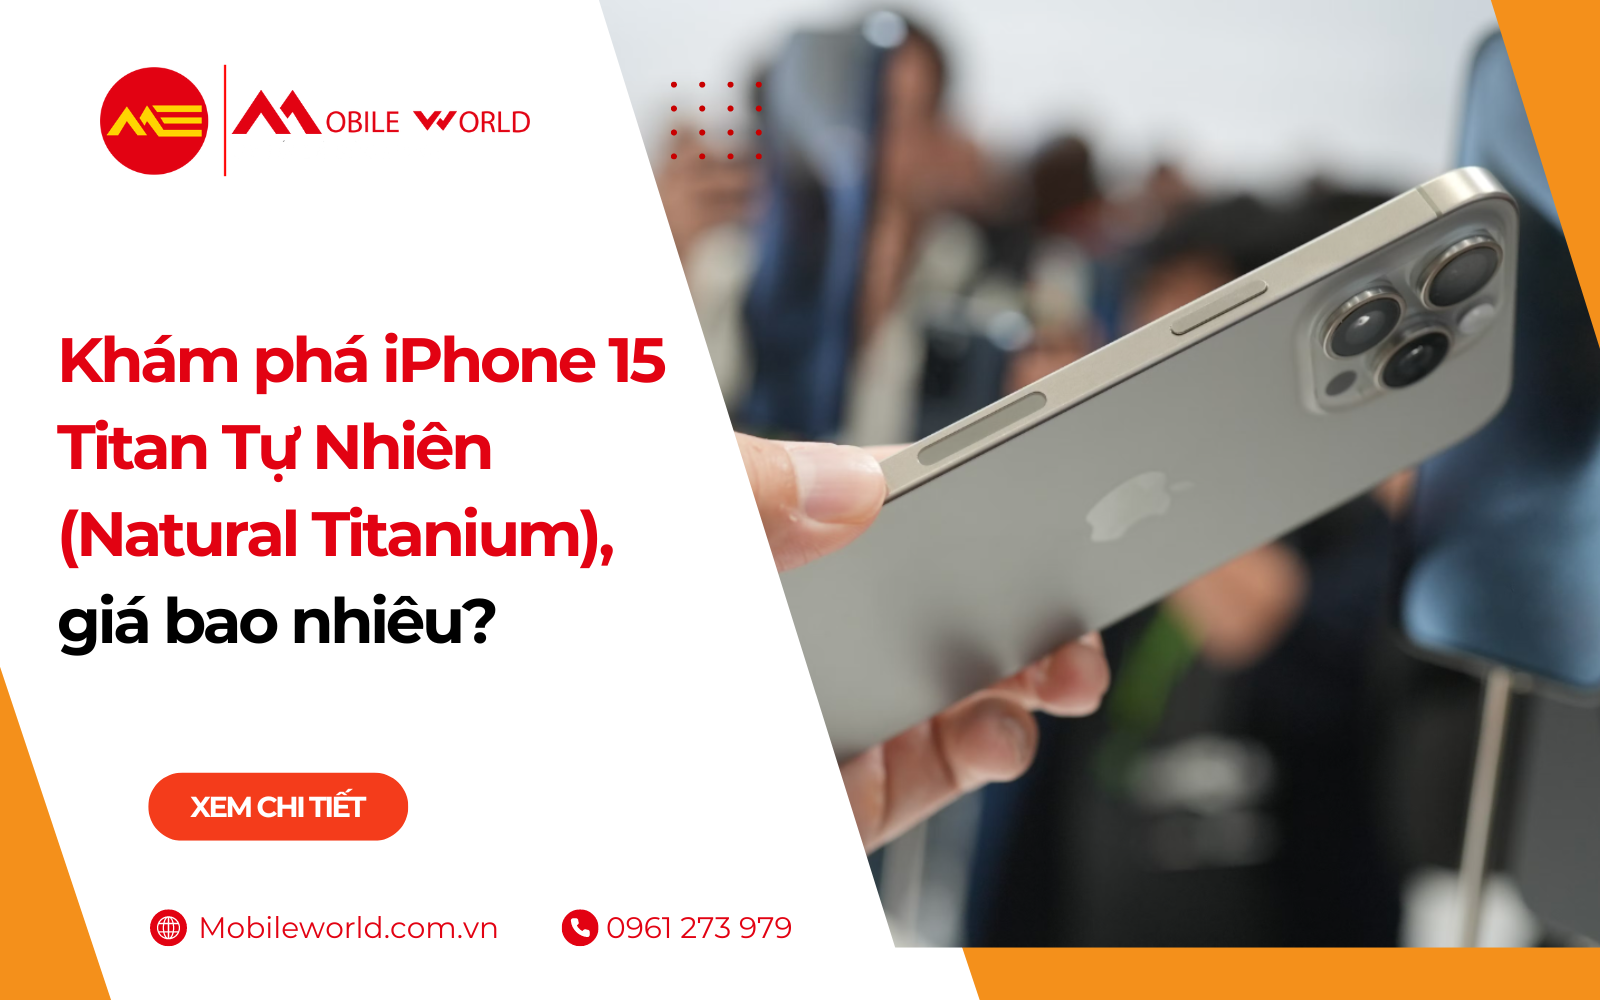 Khám phá iPhone 15 Titan Tự Nhiên (Natural Titanium), giá bao nhiêu?